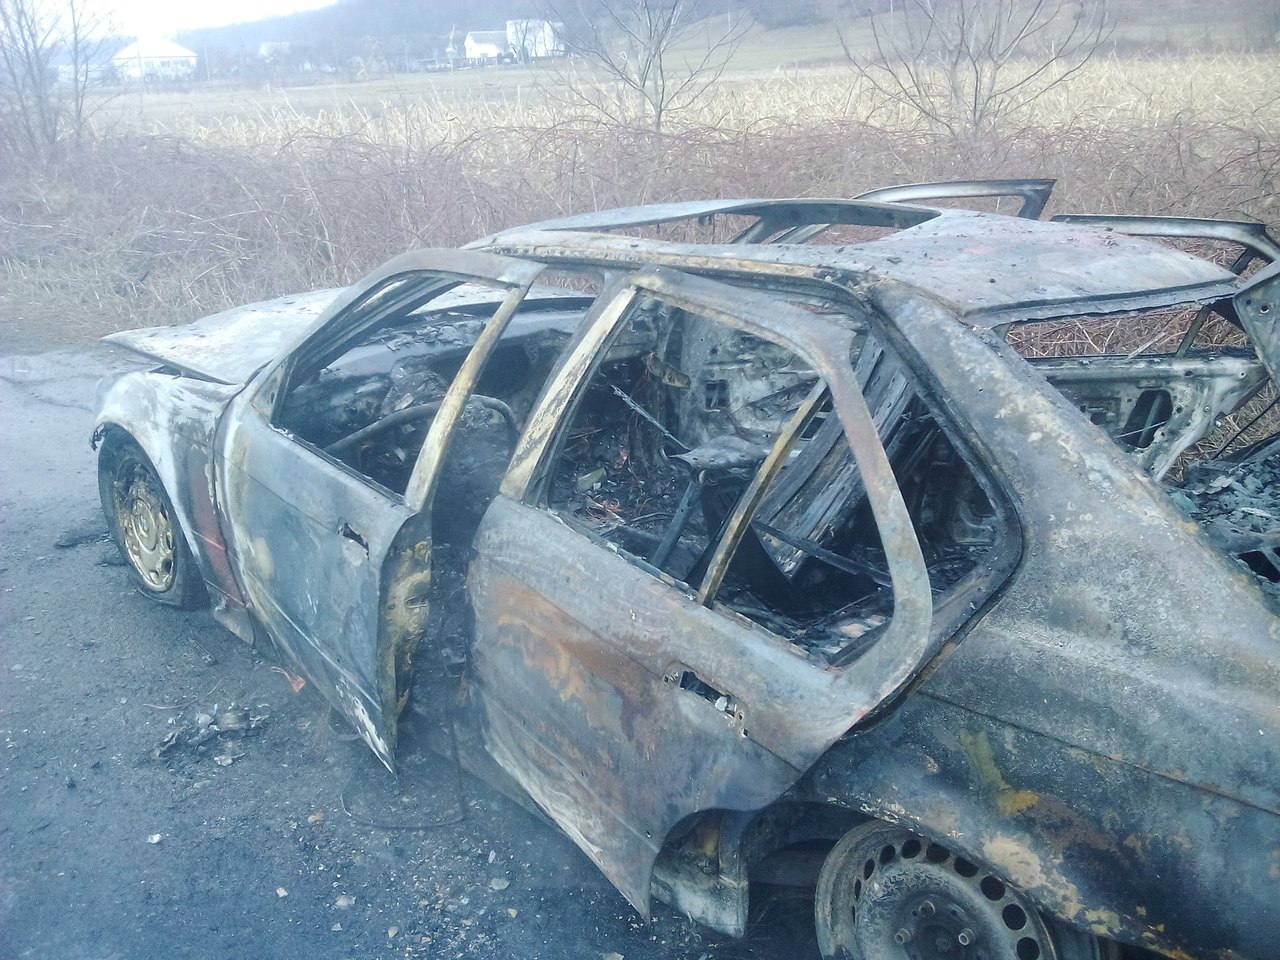 ьогодні, 28 лютого, між селами Білки та Імстичево Іршавського району (Закарпатська область) на ходу загорілася BMW 1997 року випуску.